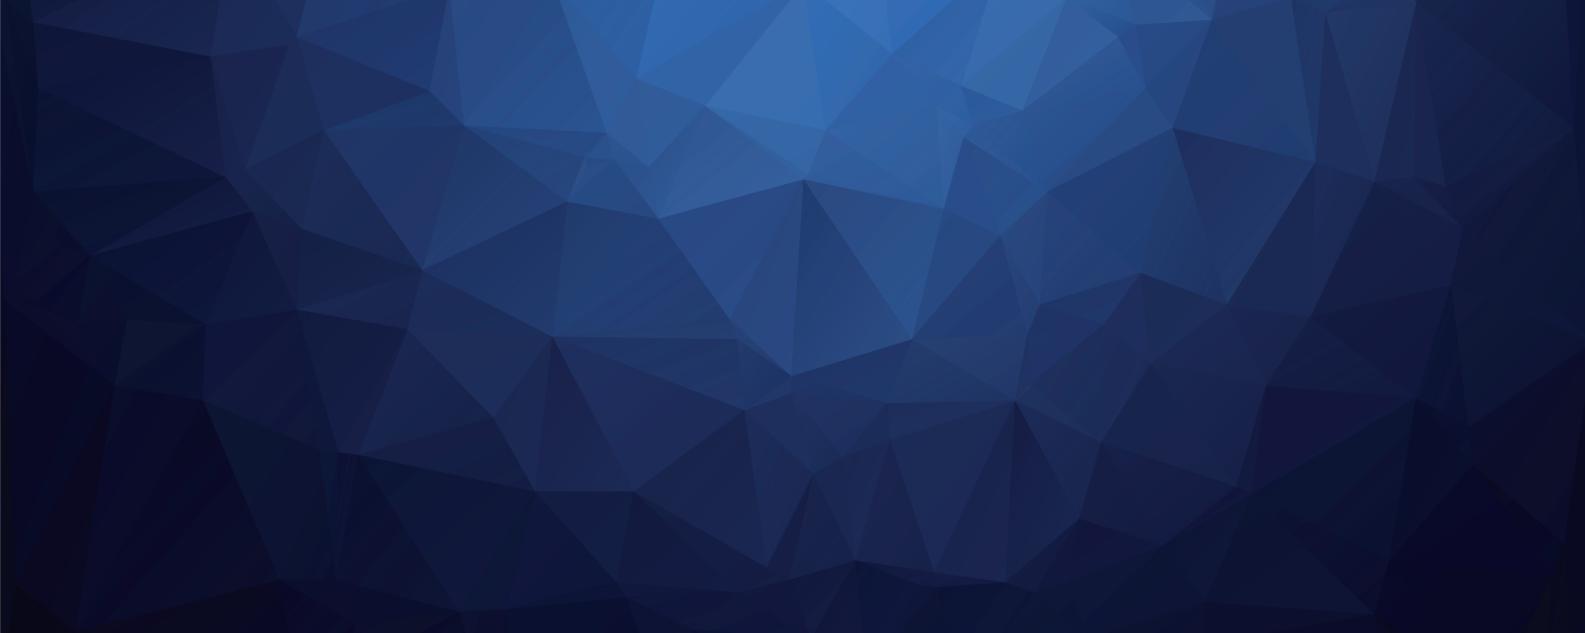 Polígono azul em segundo plano